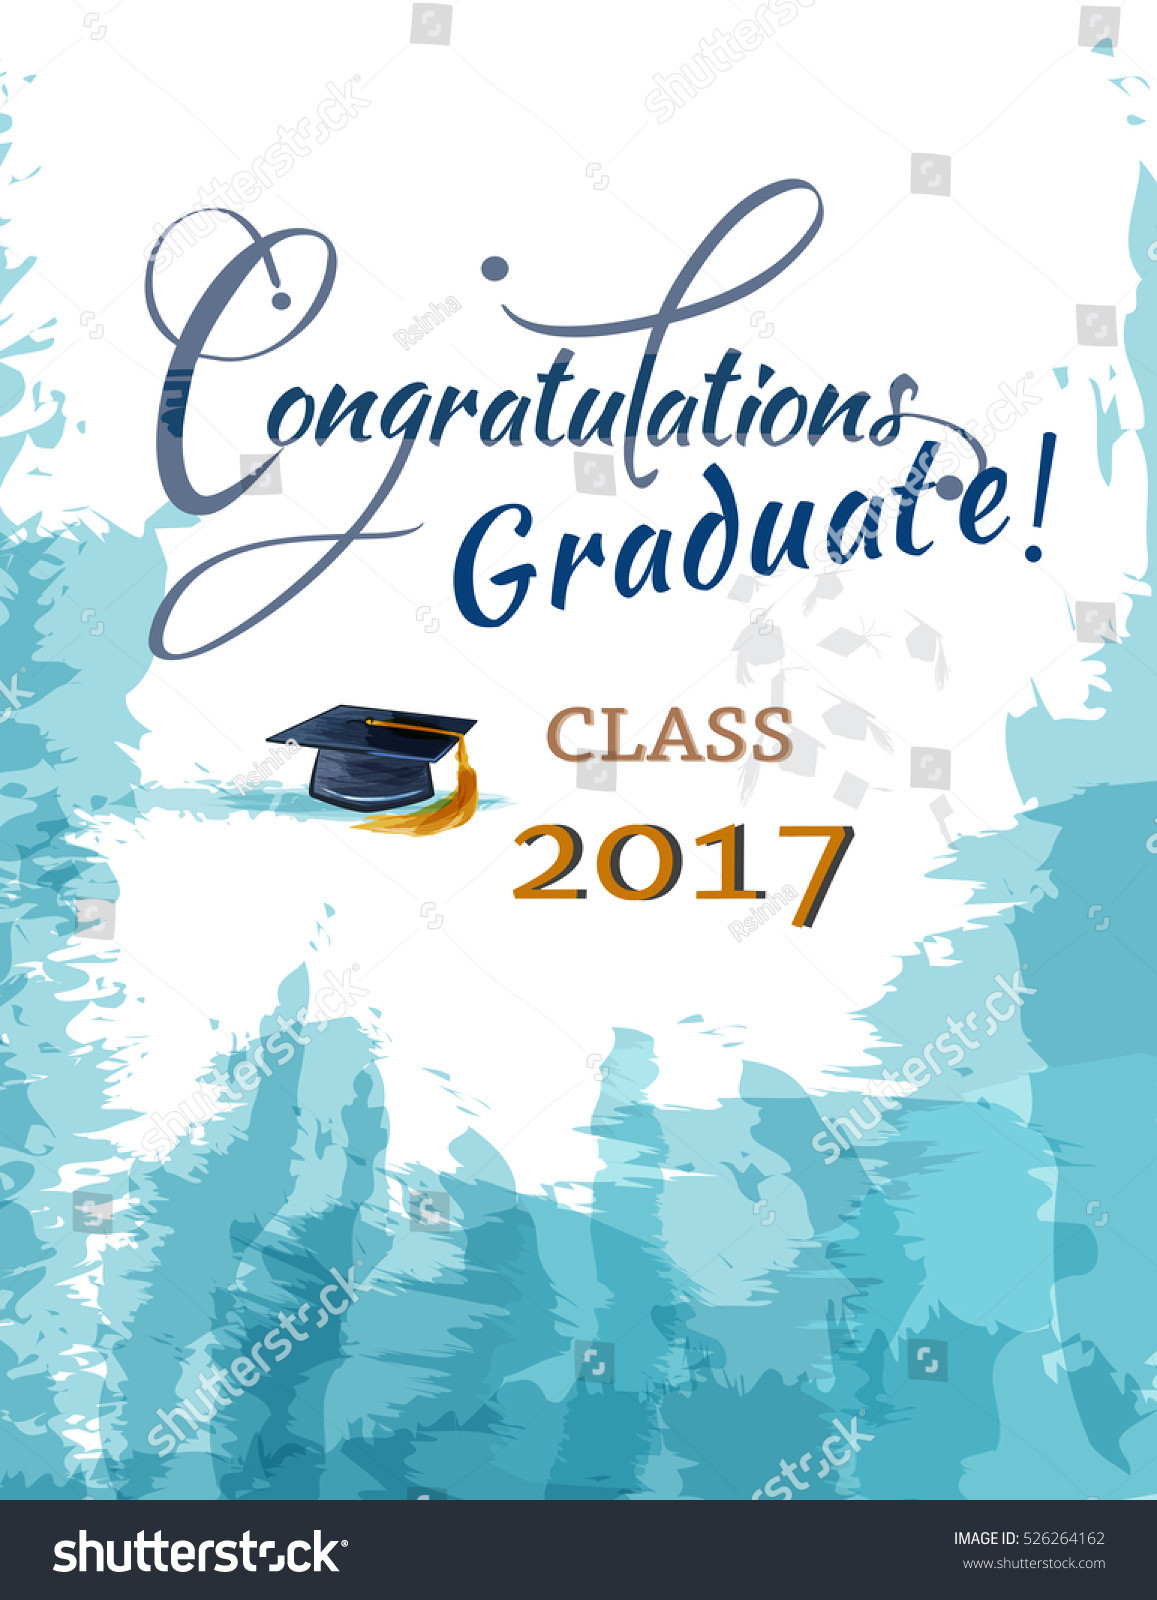 2017 Graduation Quotes
 Congratulations Graduate Class 2017 Stock Vector